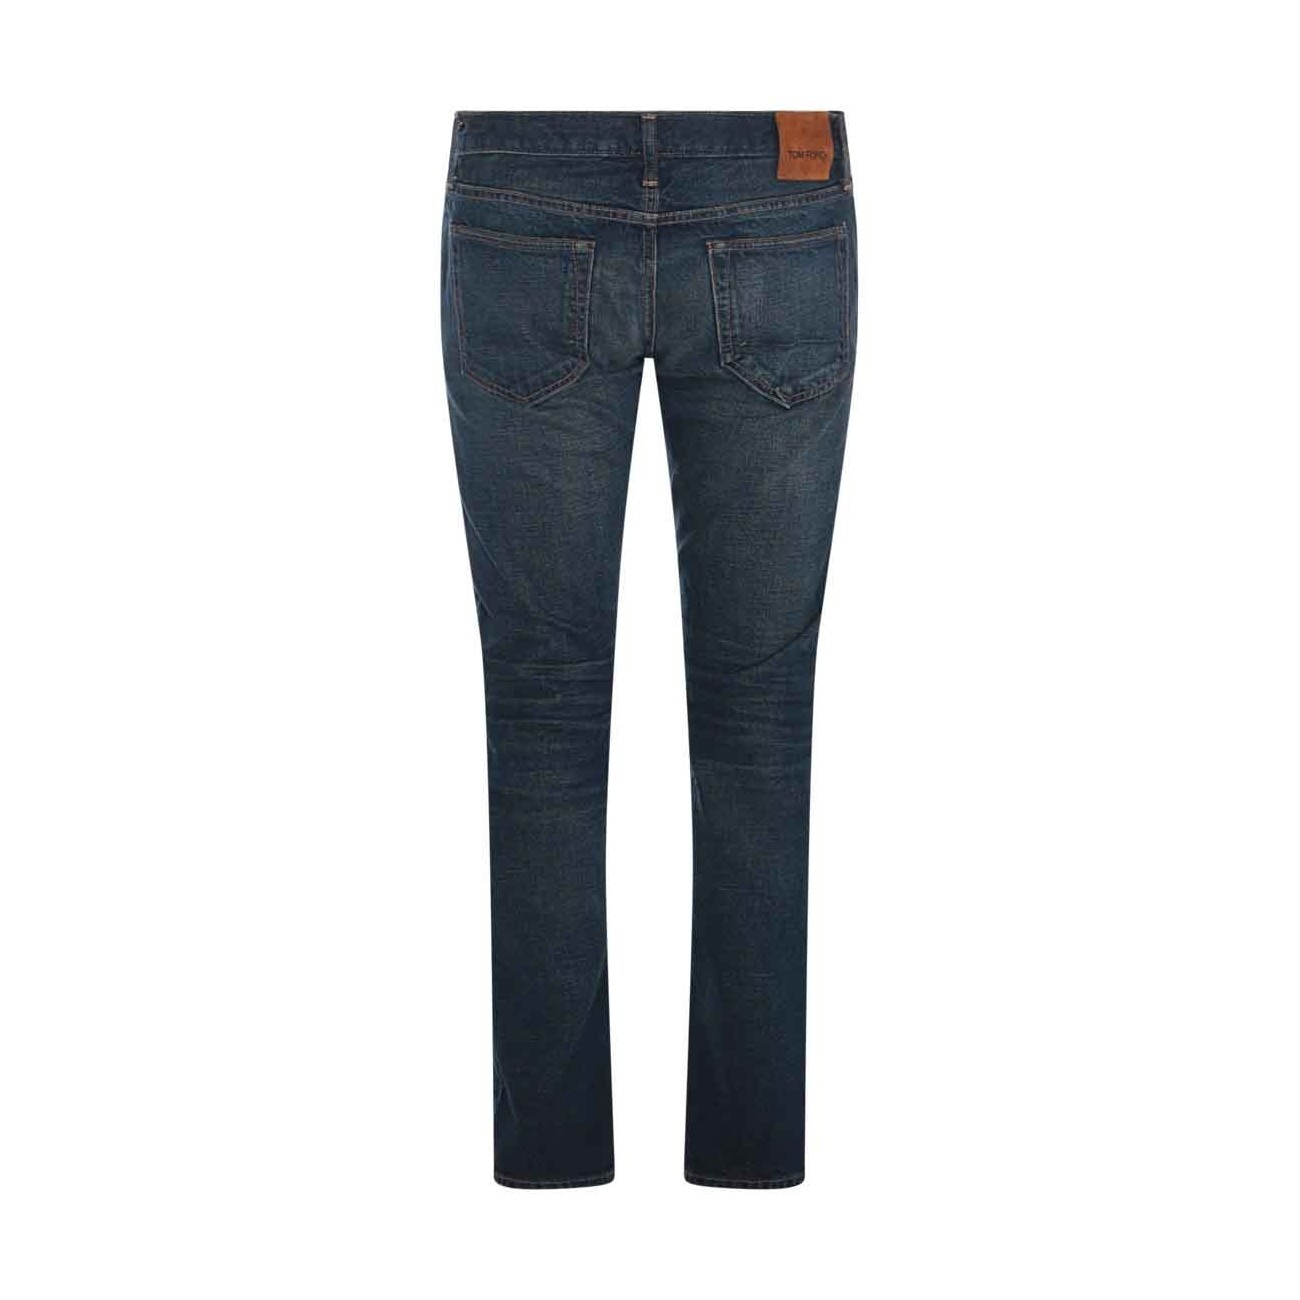 blue cotton denim jeans - 2